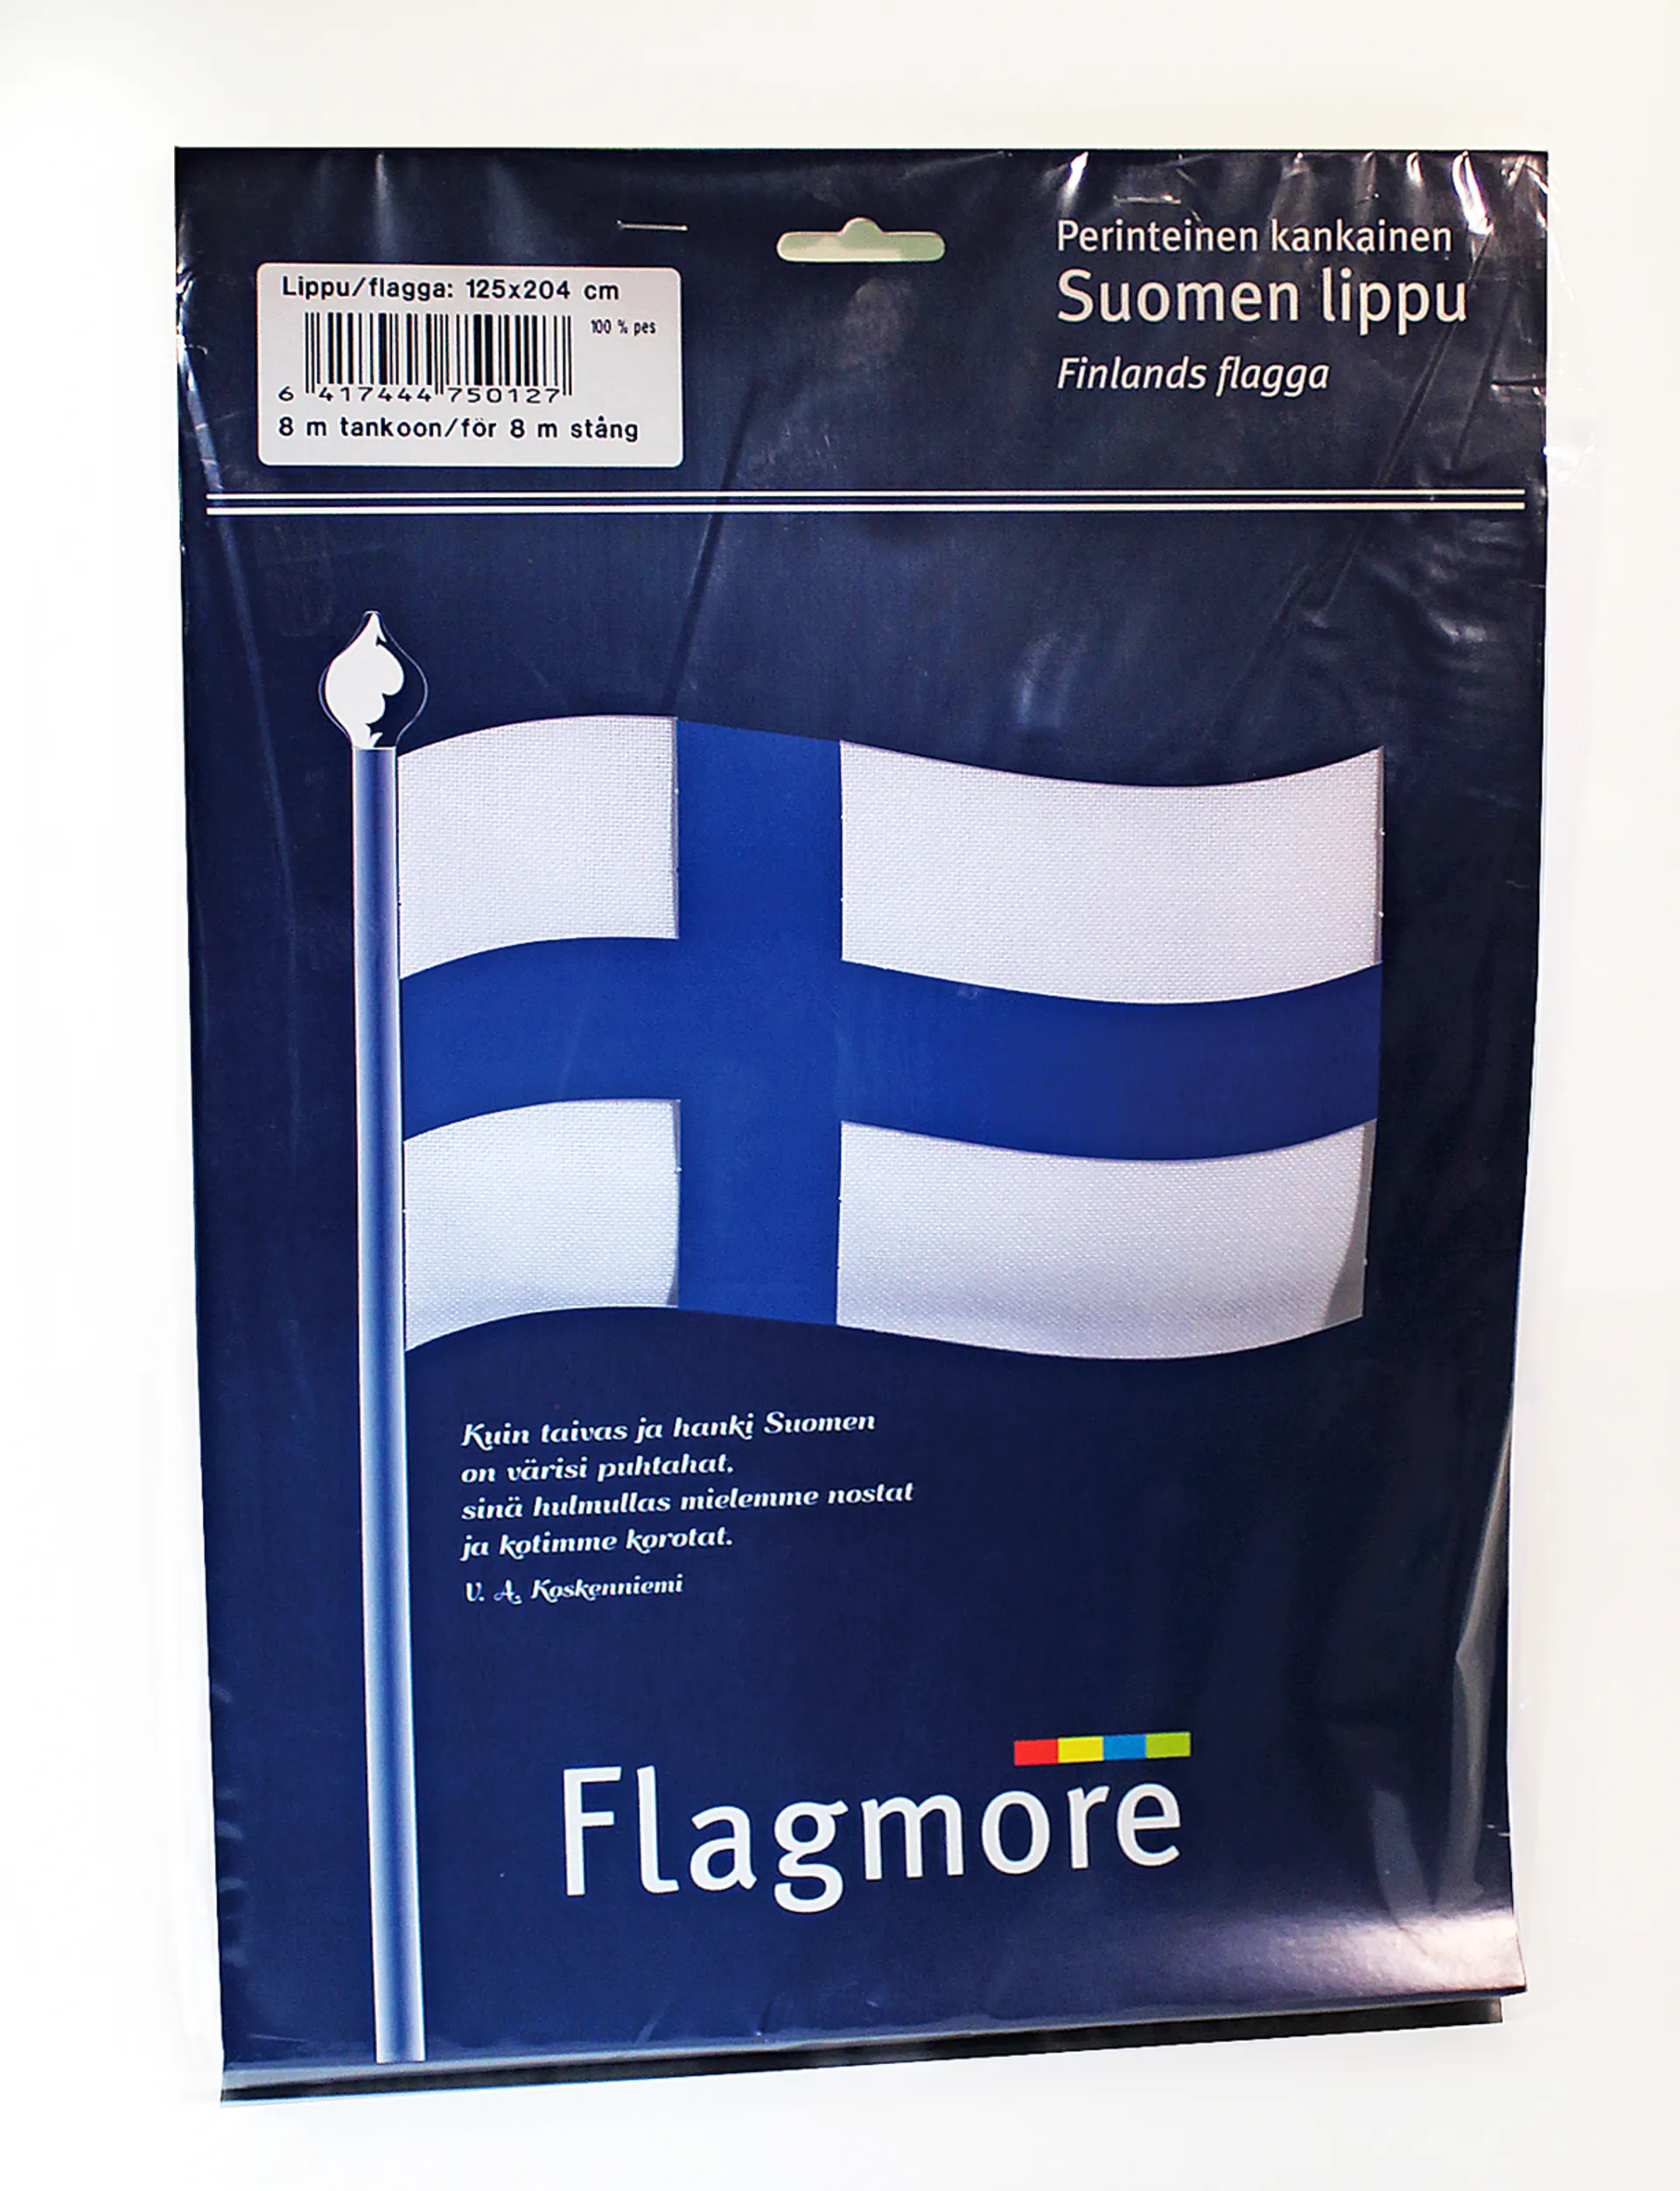 Flagmore Suomenlippu no 8